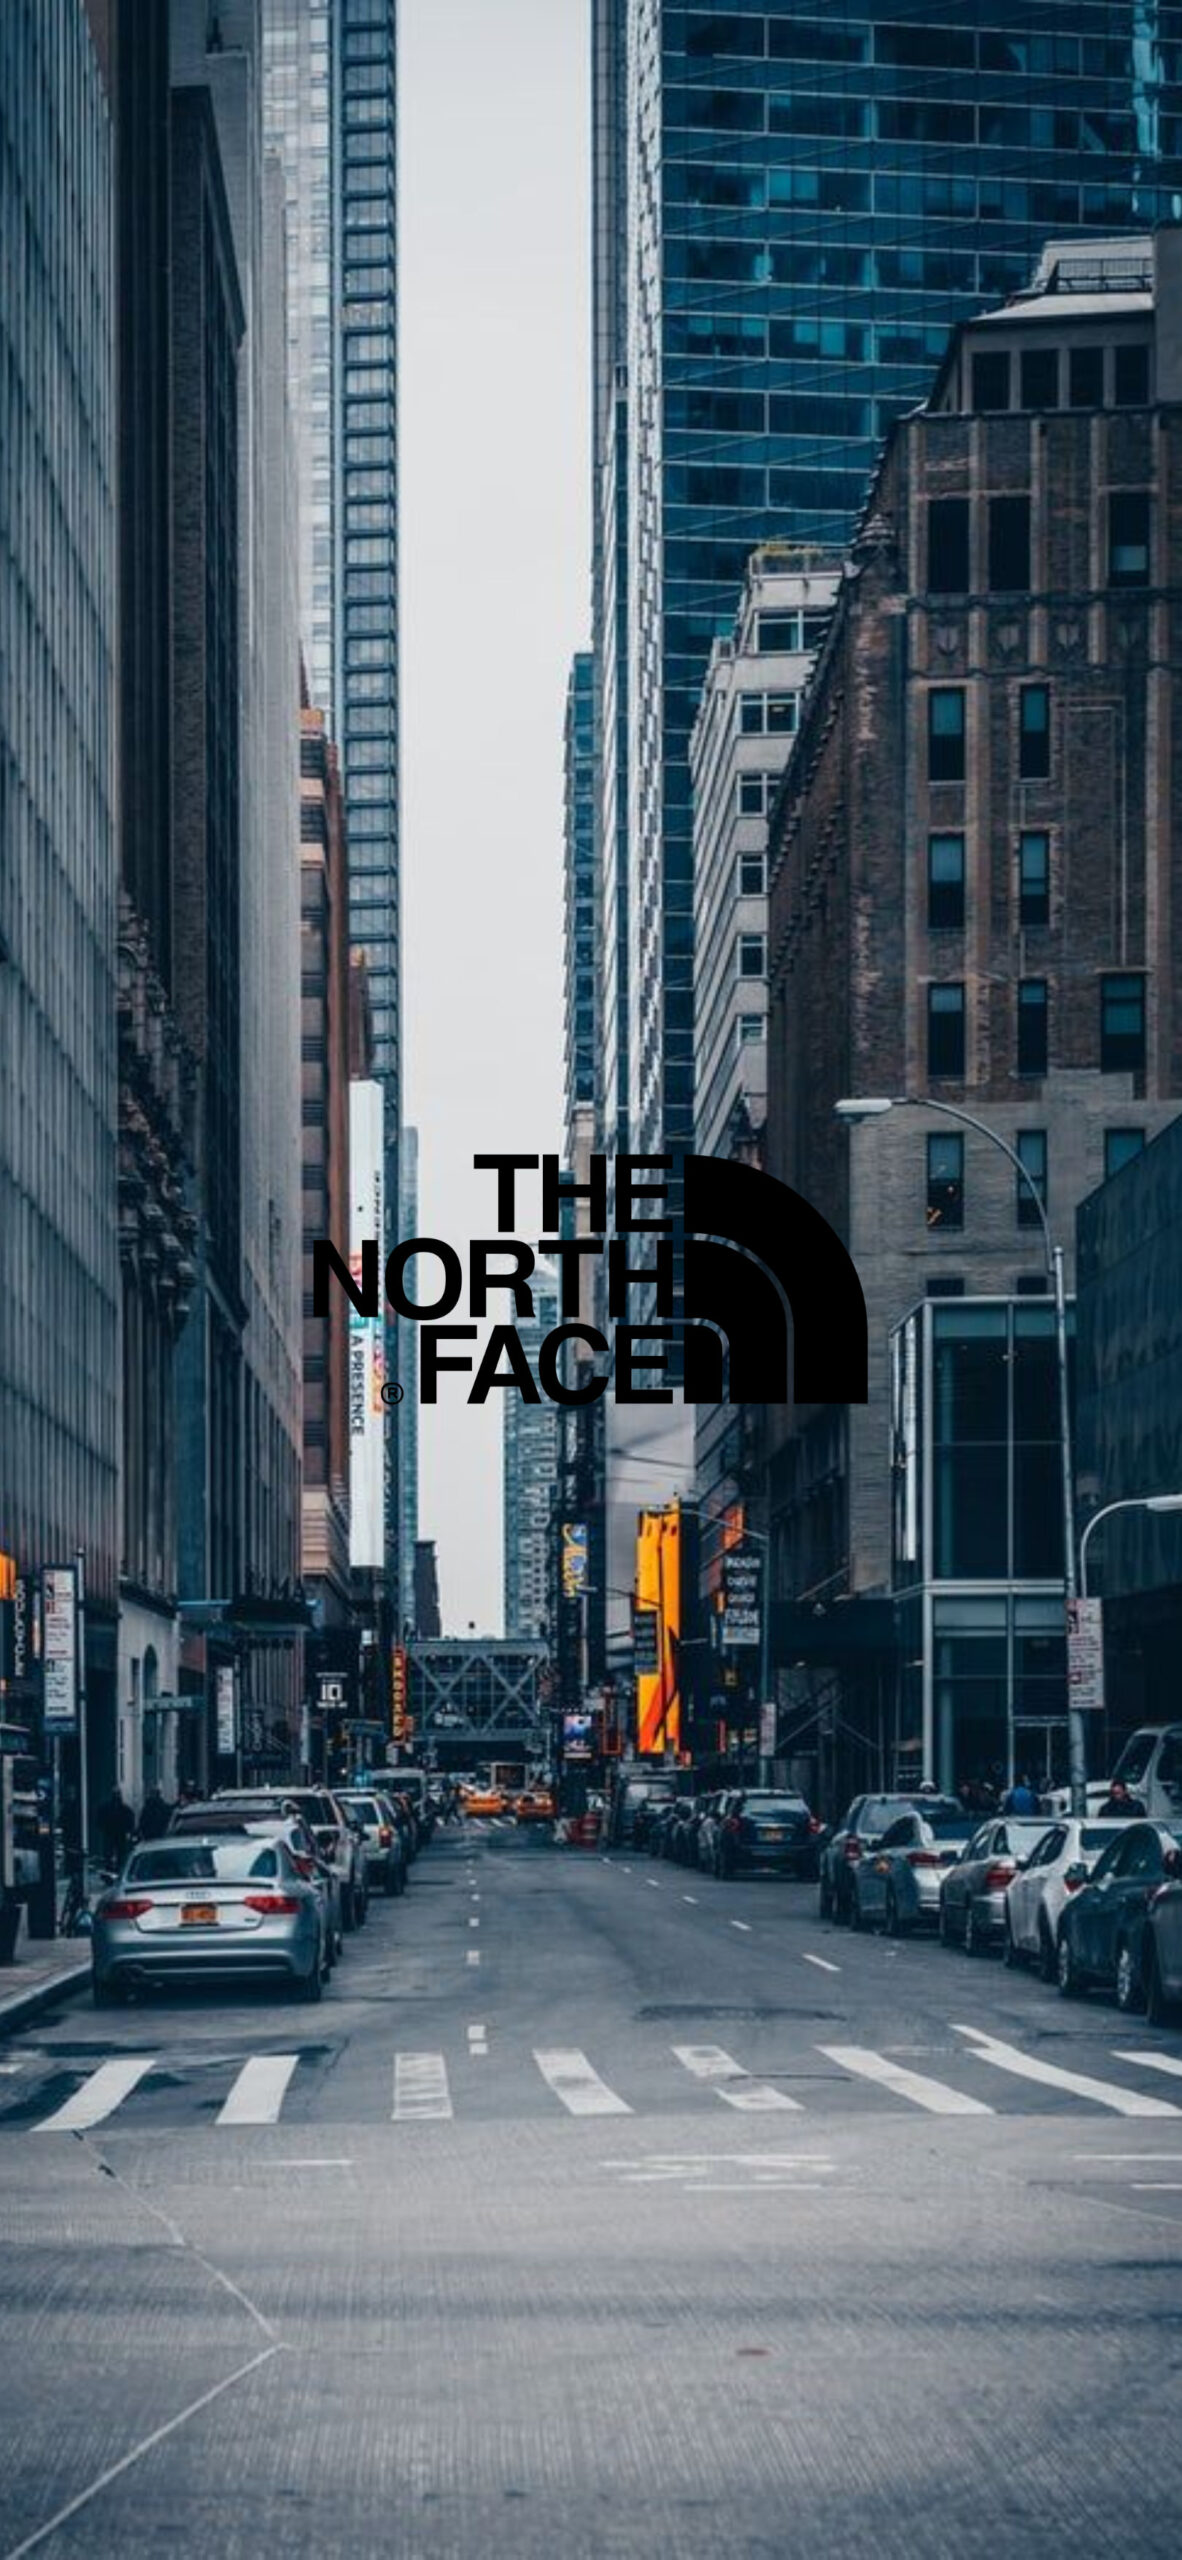 The North Face ザ ノース フェイスのおしゃれな無料高画質スマホ壁紙51枚 エモい スマホ壁紙辞典